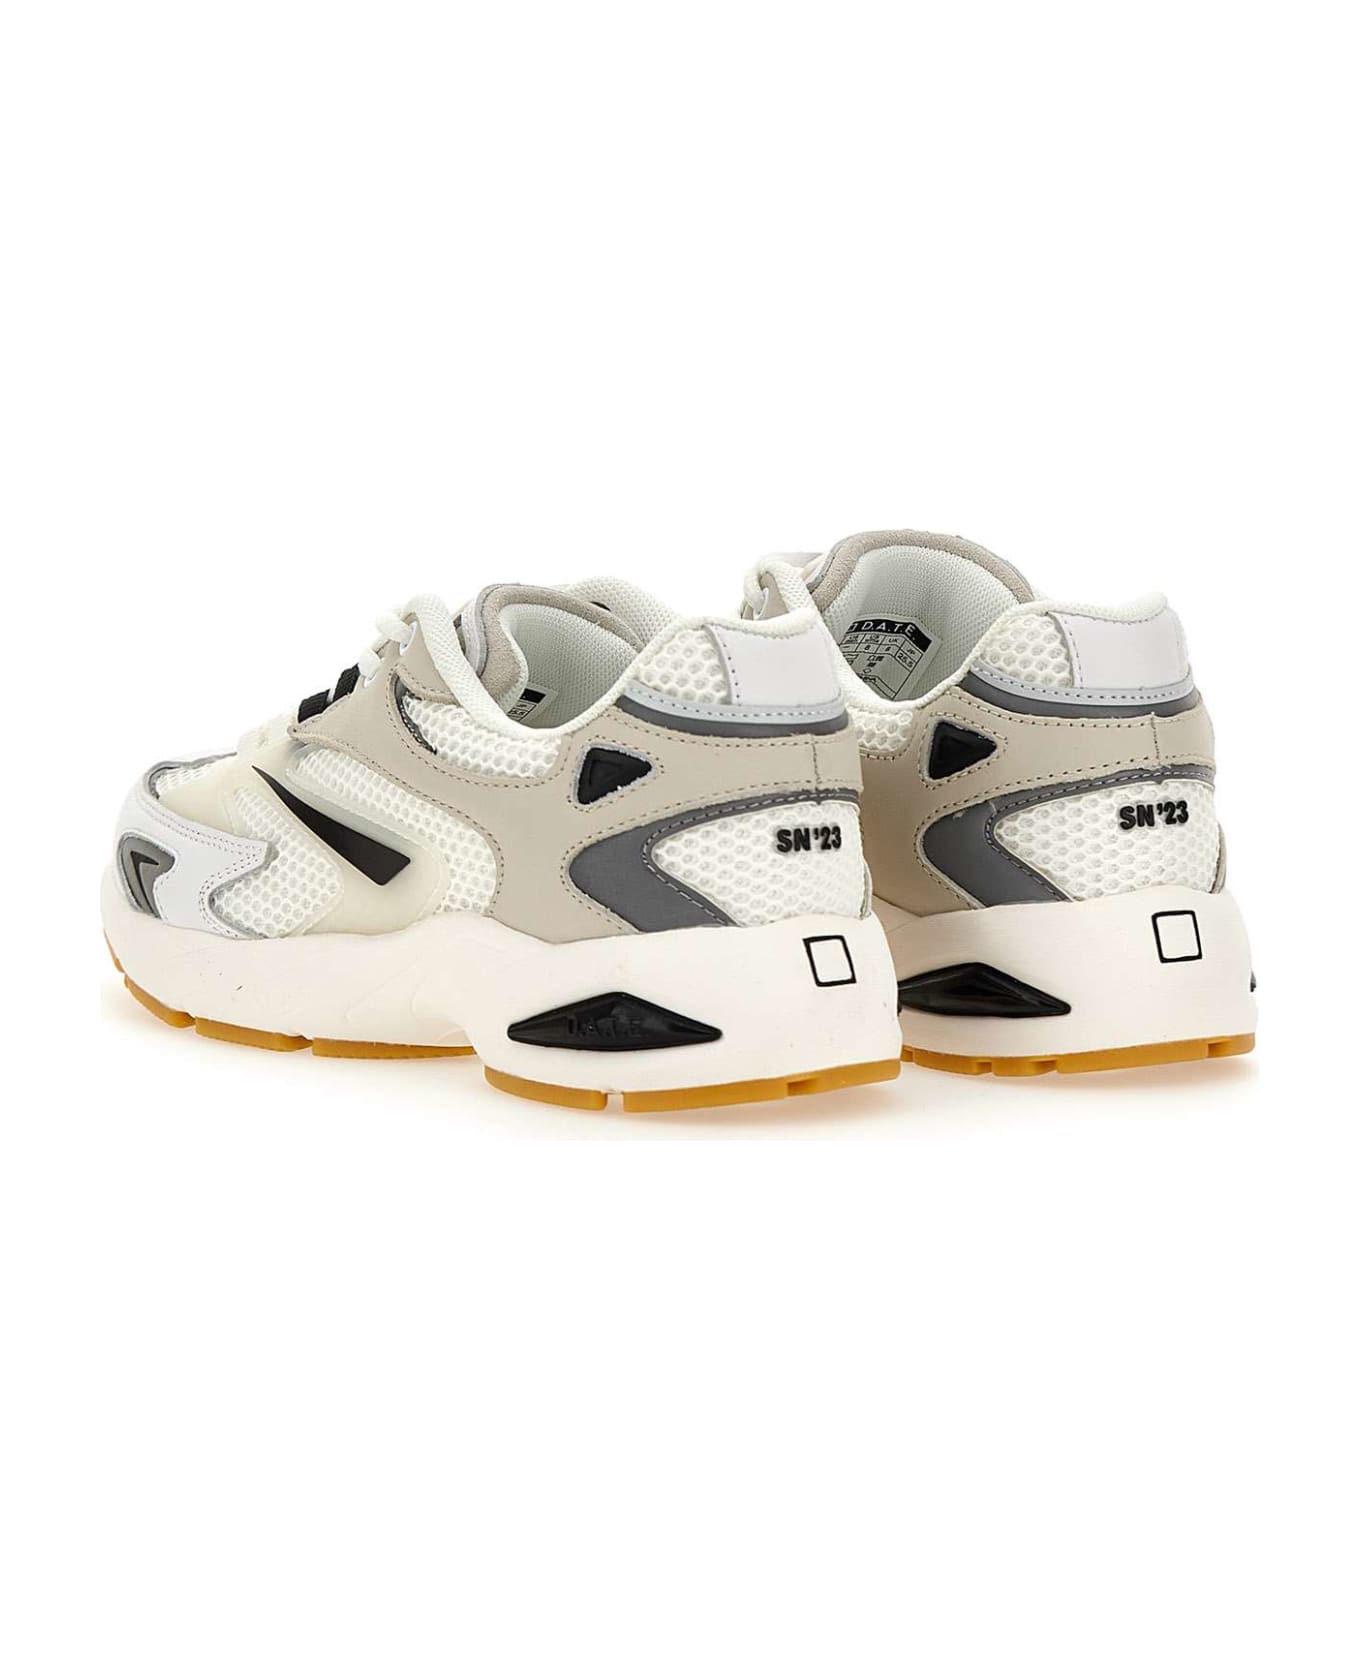 D.A.T.E. 'sn23 Mesh' Sneakers - Bianco/Grigio